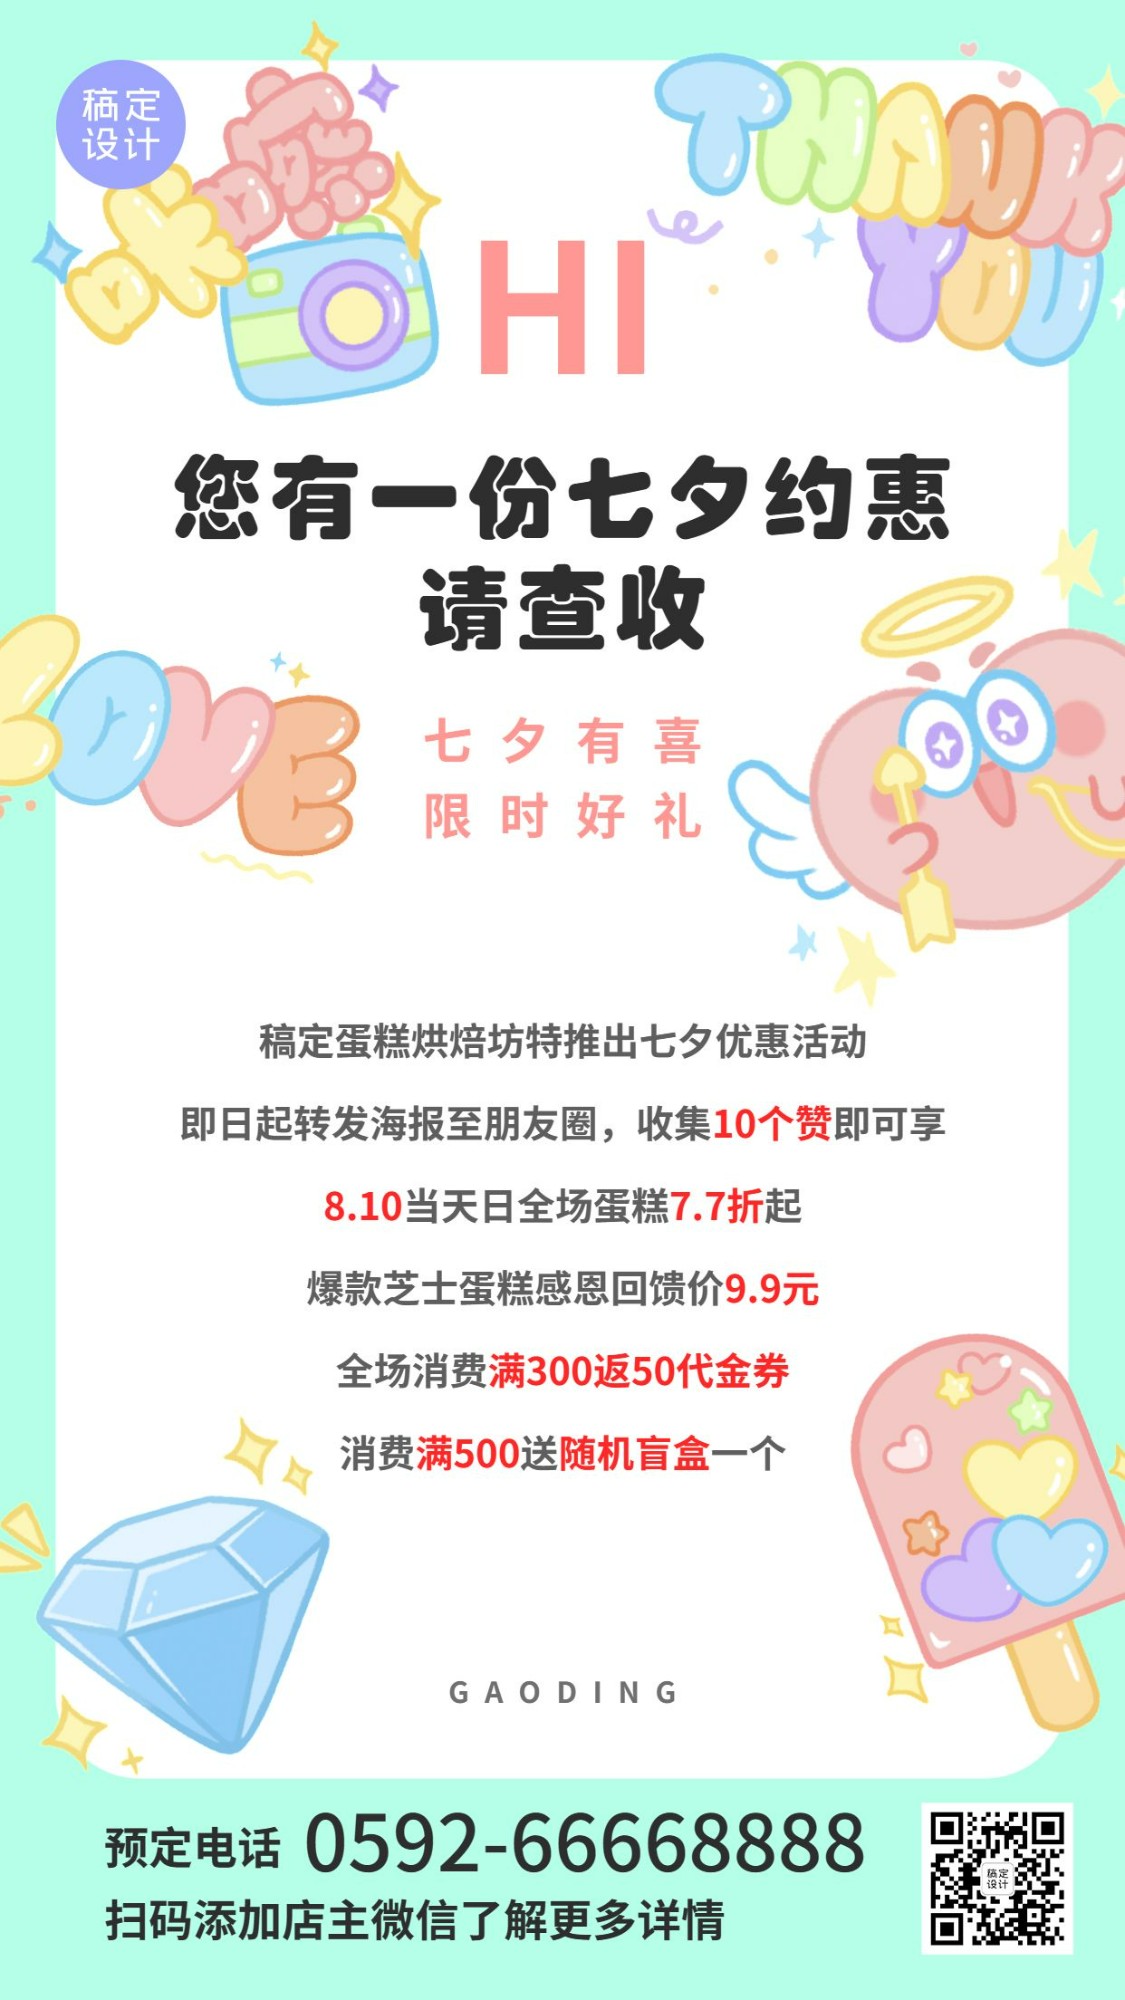 七夕烘焙甜品活动通知简约竖版海报